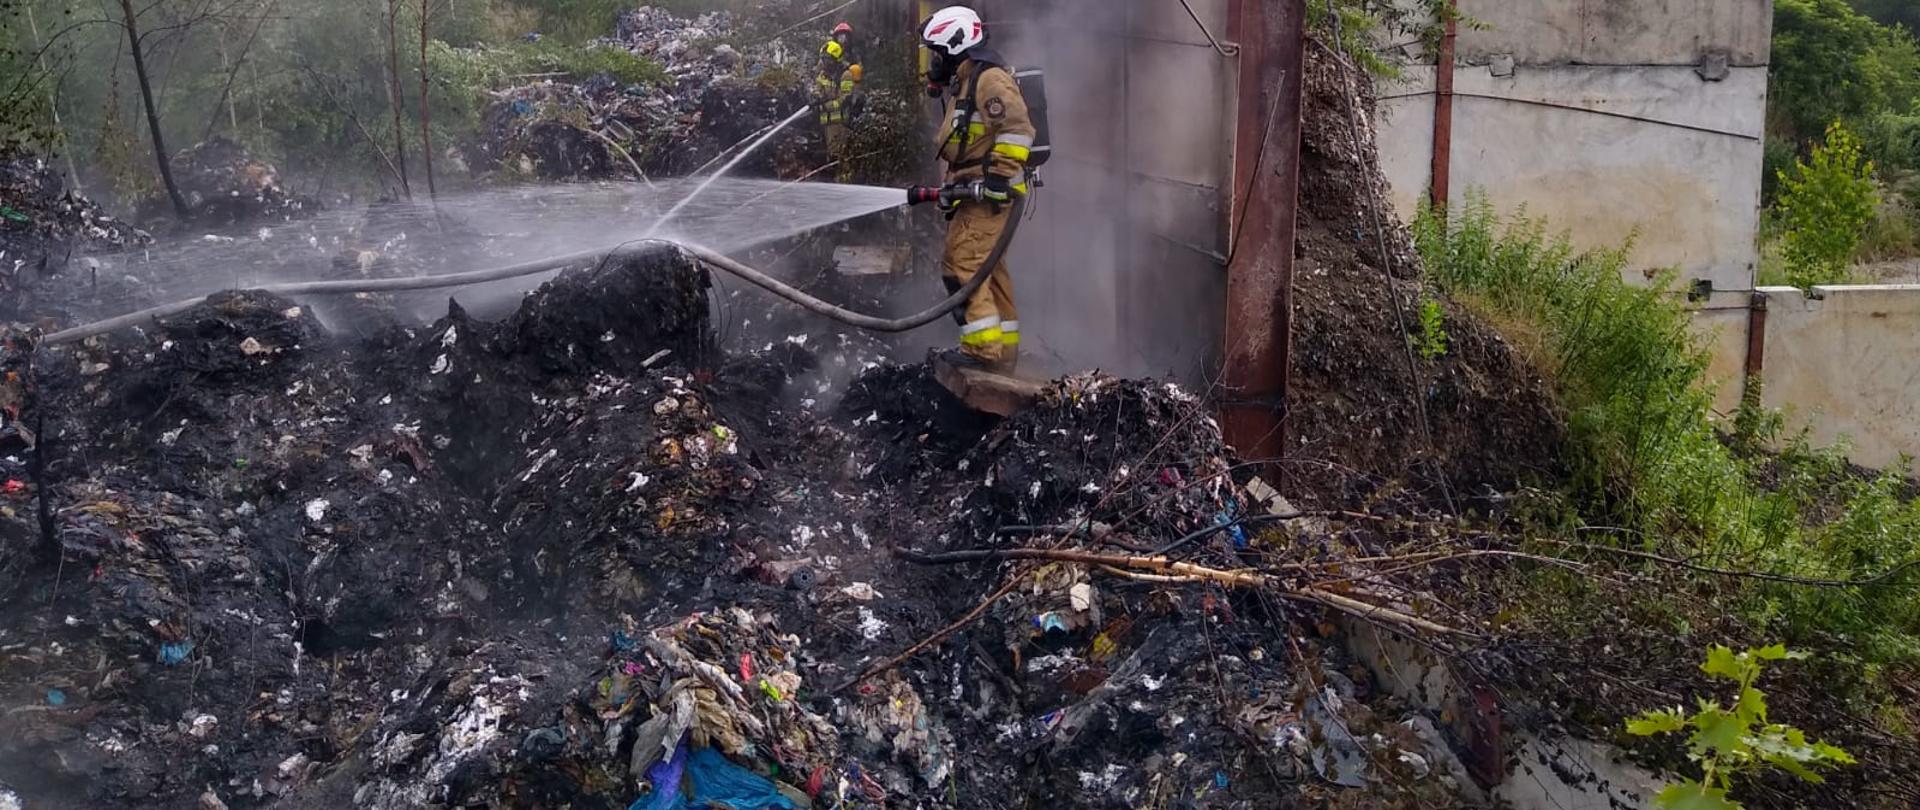 Hałda odpadów, częściowo spalona. Na hałdzie stoi strażak w ubraniu specjalnym w kolorze piaskowym, wyposażony w apart powietrzny, maskę oraz biały hełm. Strażak podaje na dymiącą się stertę odpadów prąd wody